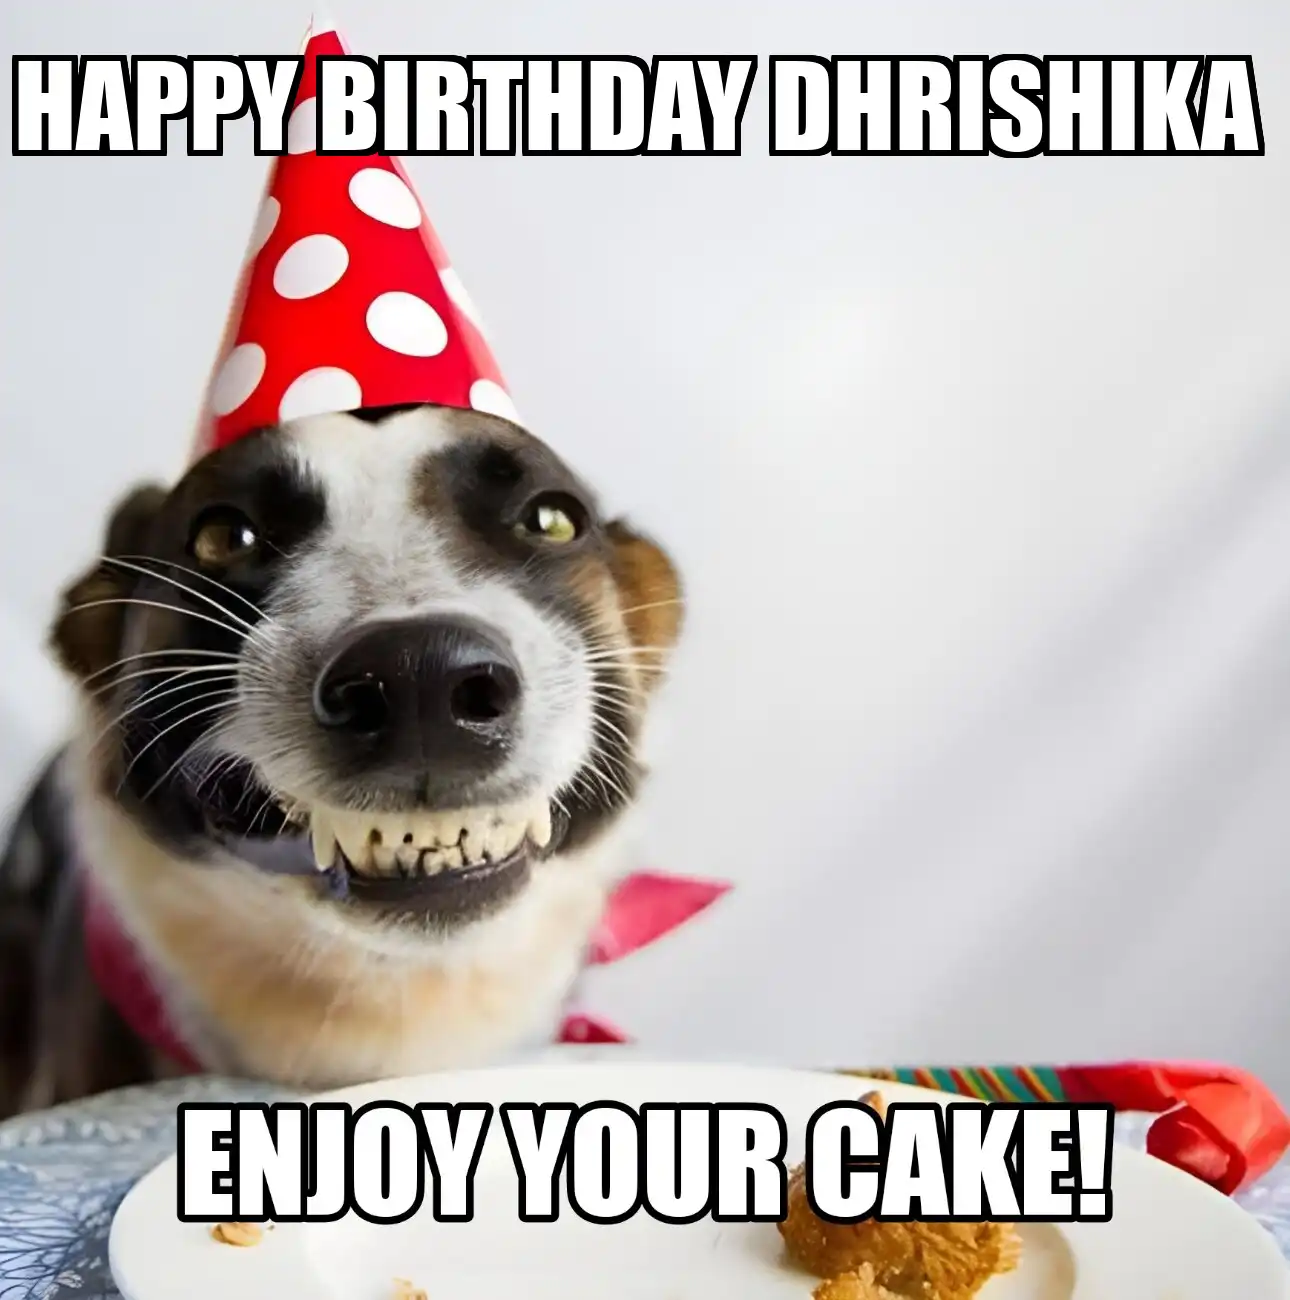 Happy Birthday Dhrishika Enjoy Your Cake Dog Meme